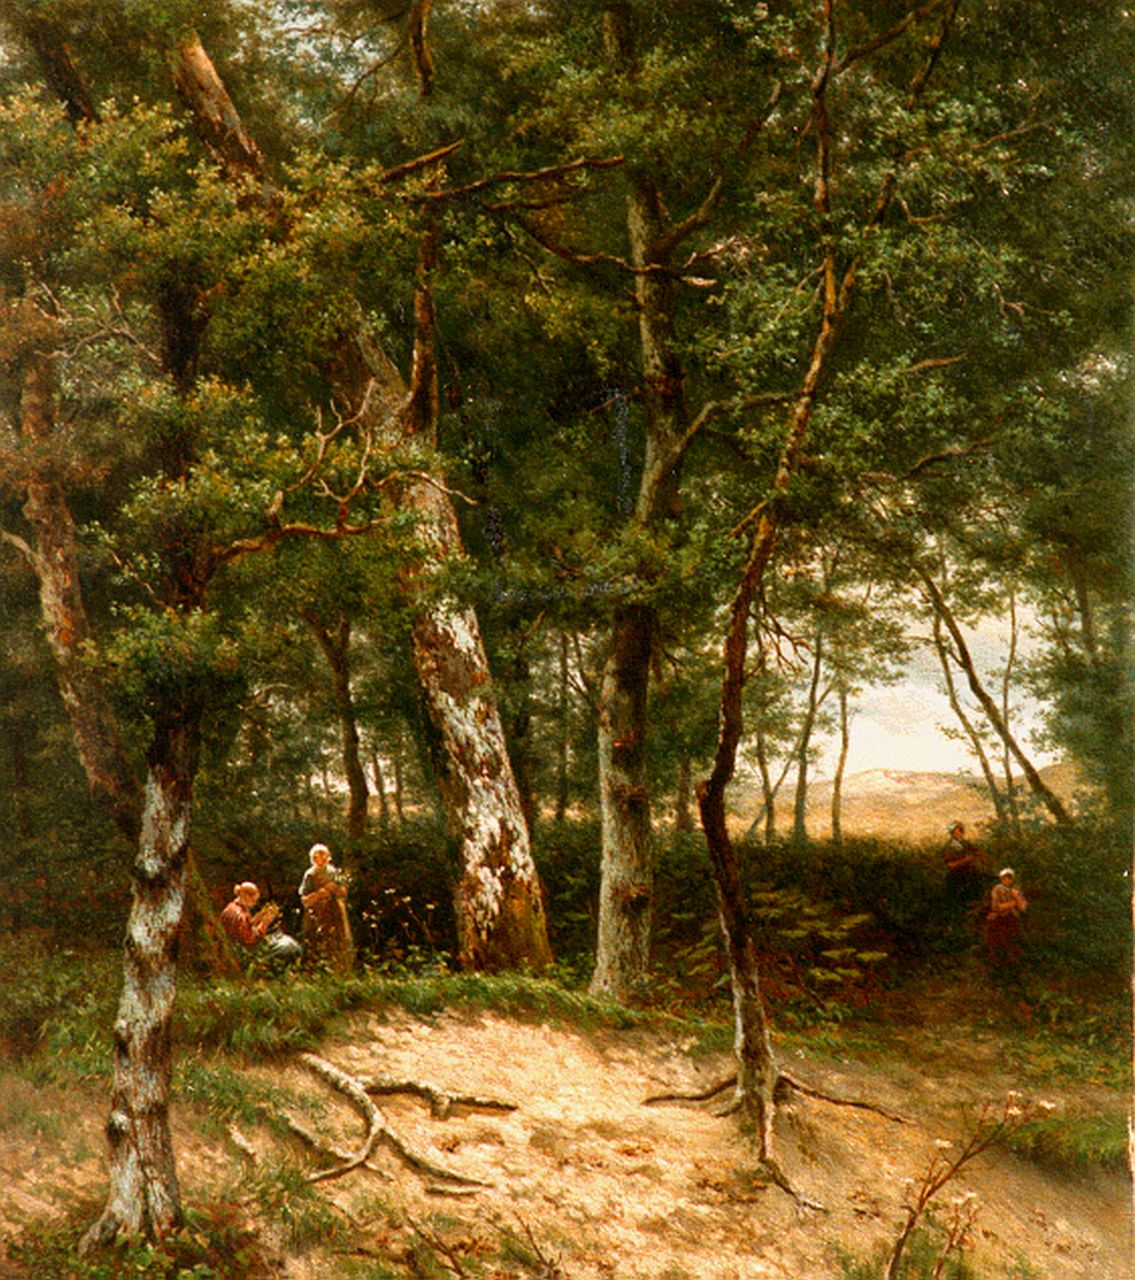 Gijsbertus Pieterse | Bloemenpluksters in het bos, olieverf op doek, 58,0 x 70,0 cm, gesigneerd r.o.